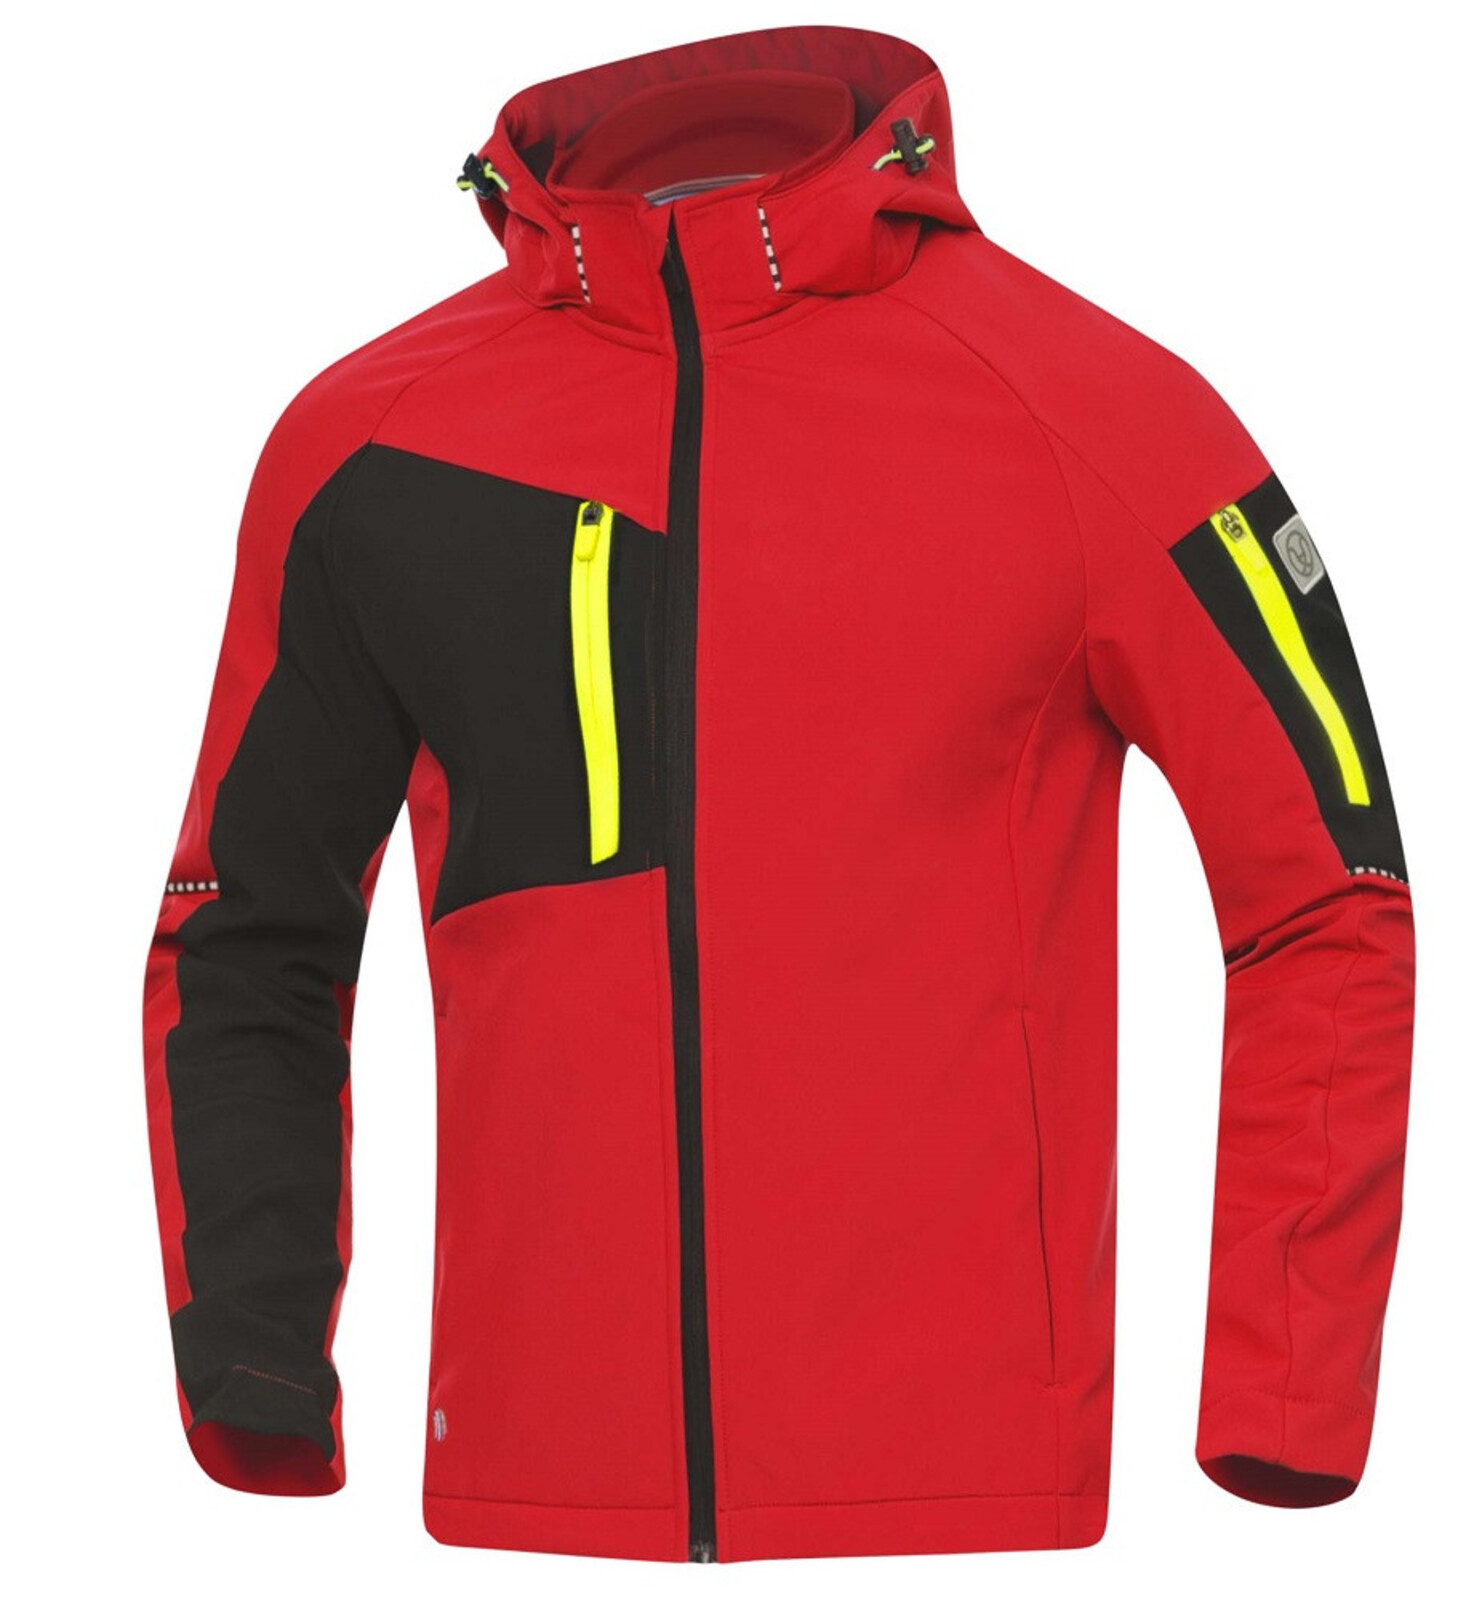 Pánska softshellová bunda Ardon Cityconic - veľkosť: L, farba: červená/čierna